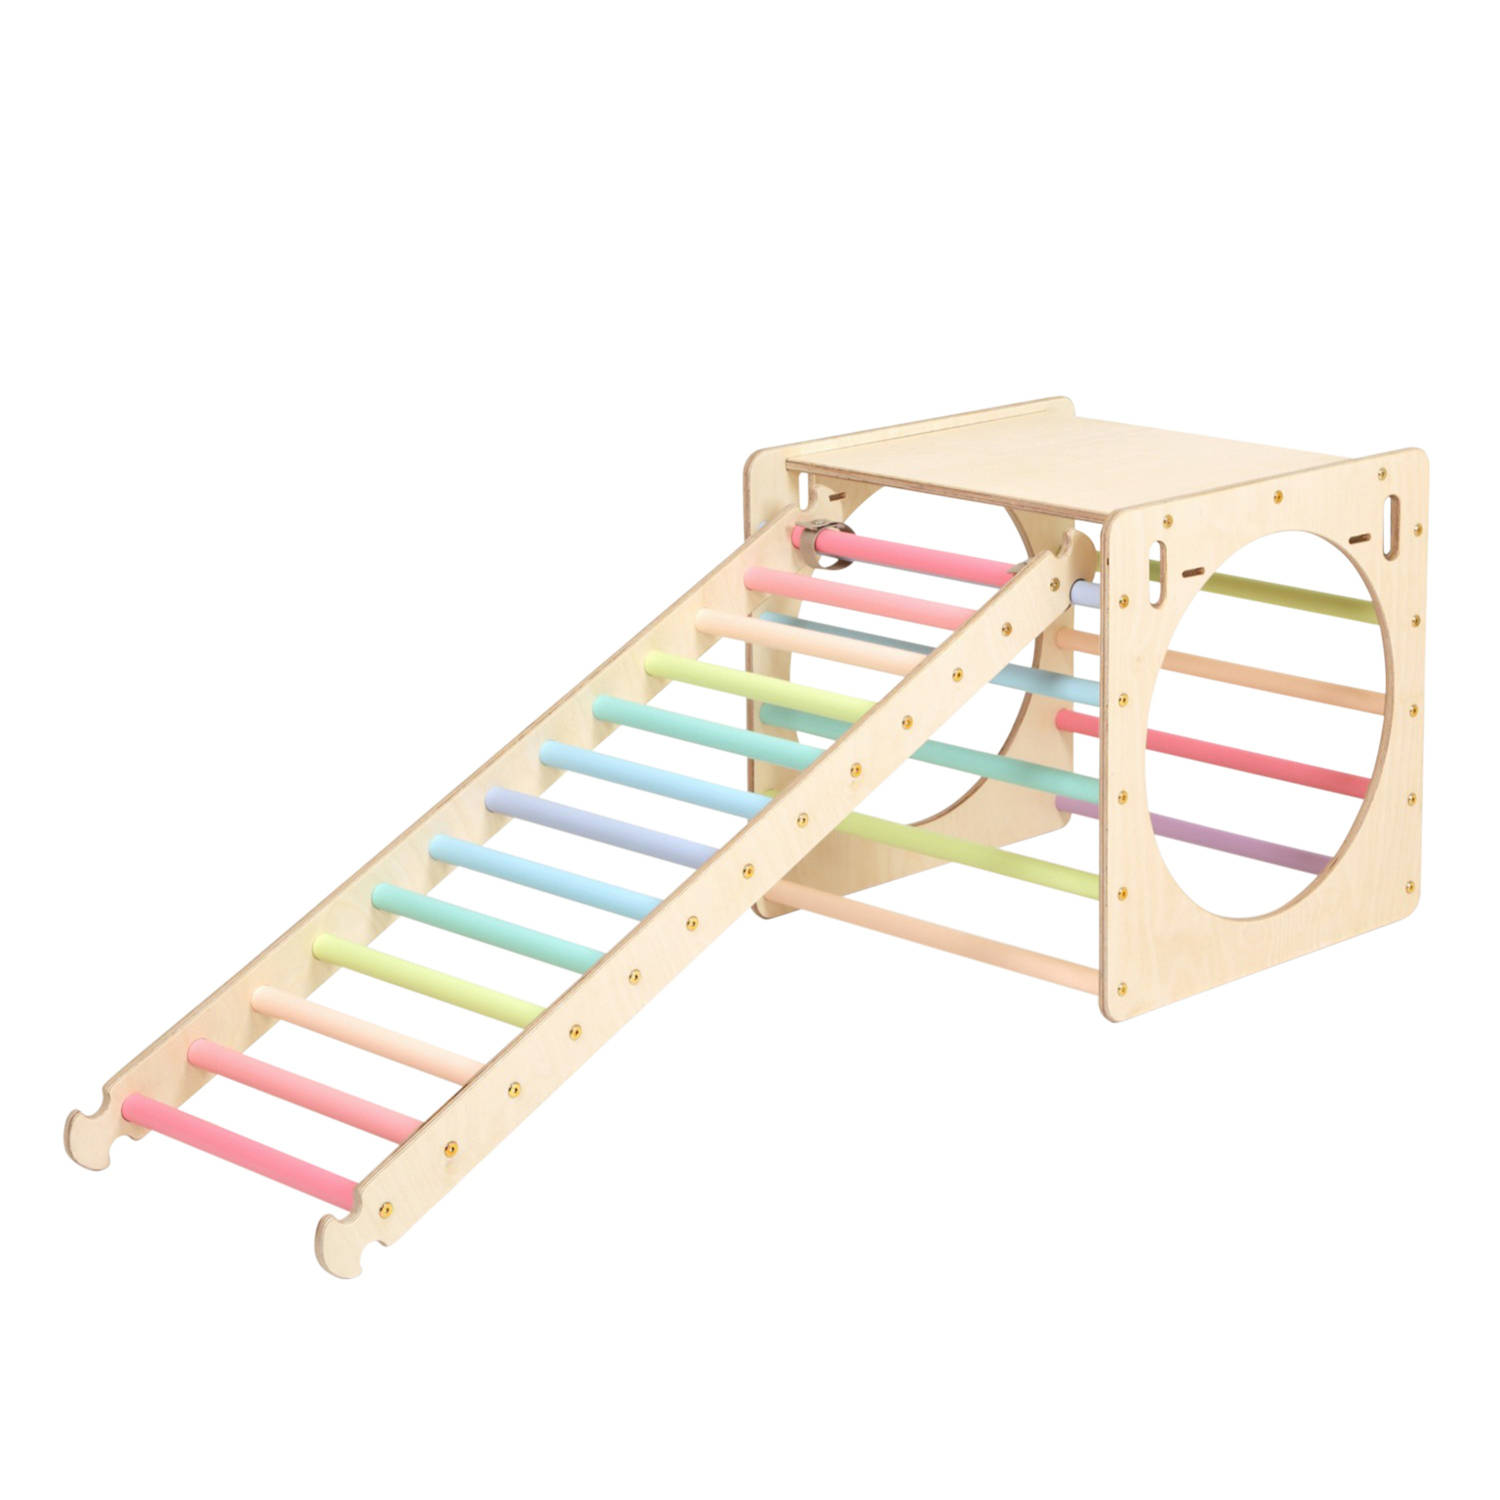 Katehaa Activiteiten Kubus Met Ladder Van Hout In Pastelkleuren Indoor Klimrek Voor Kinderen